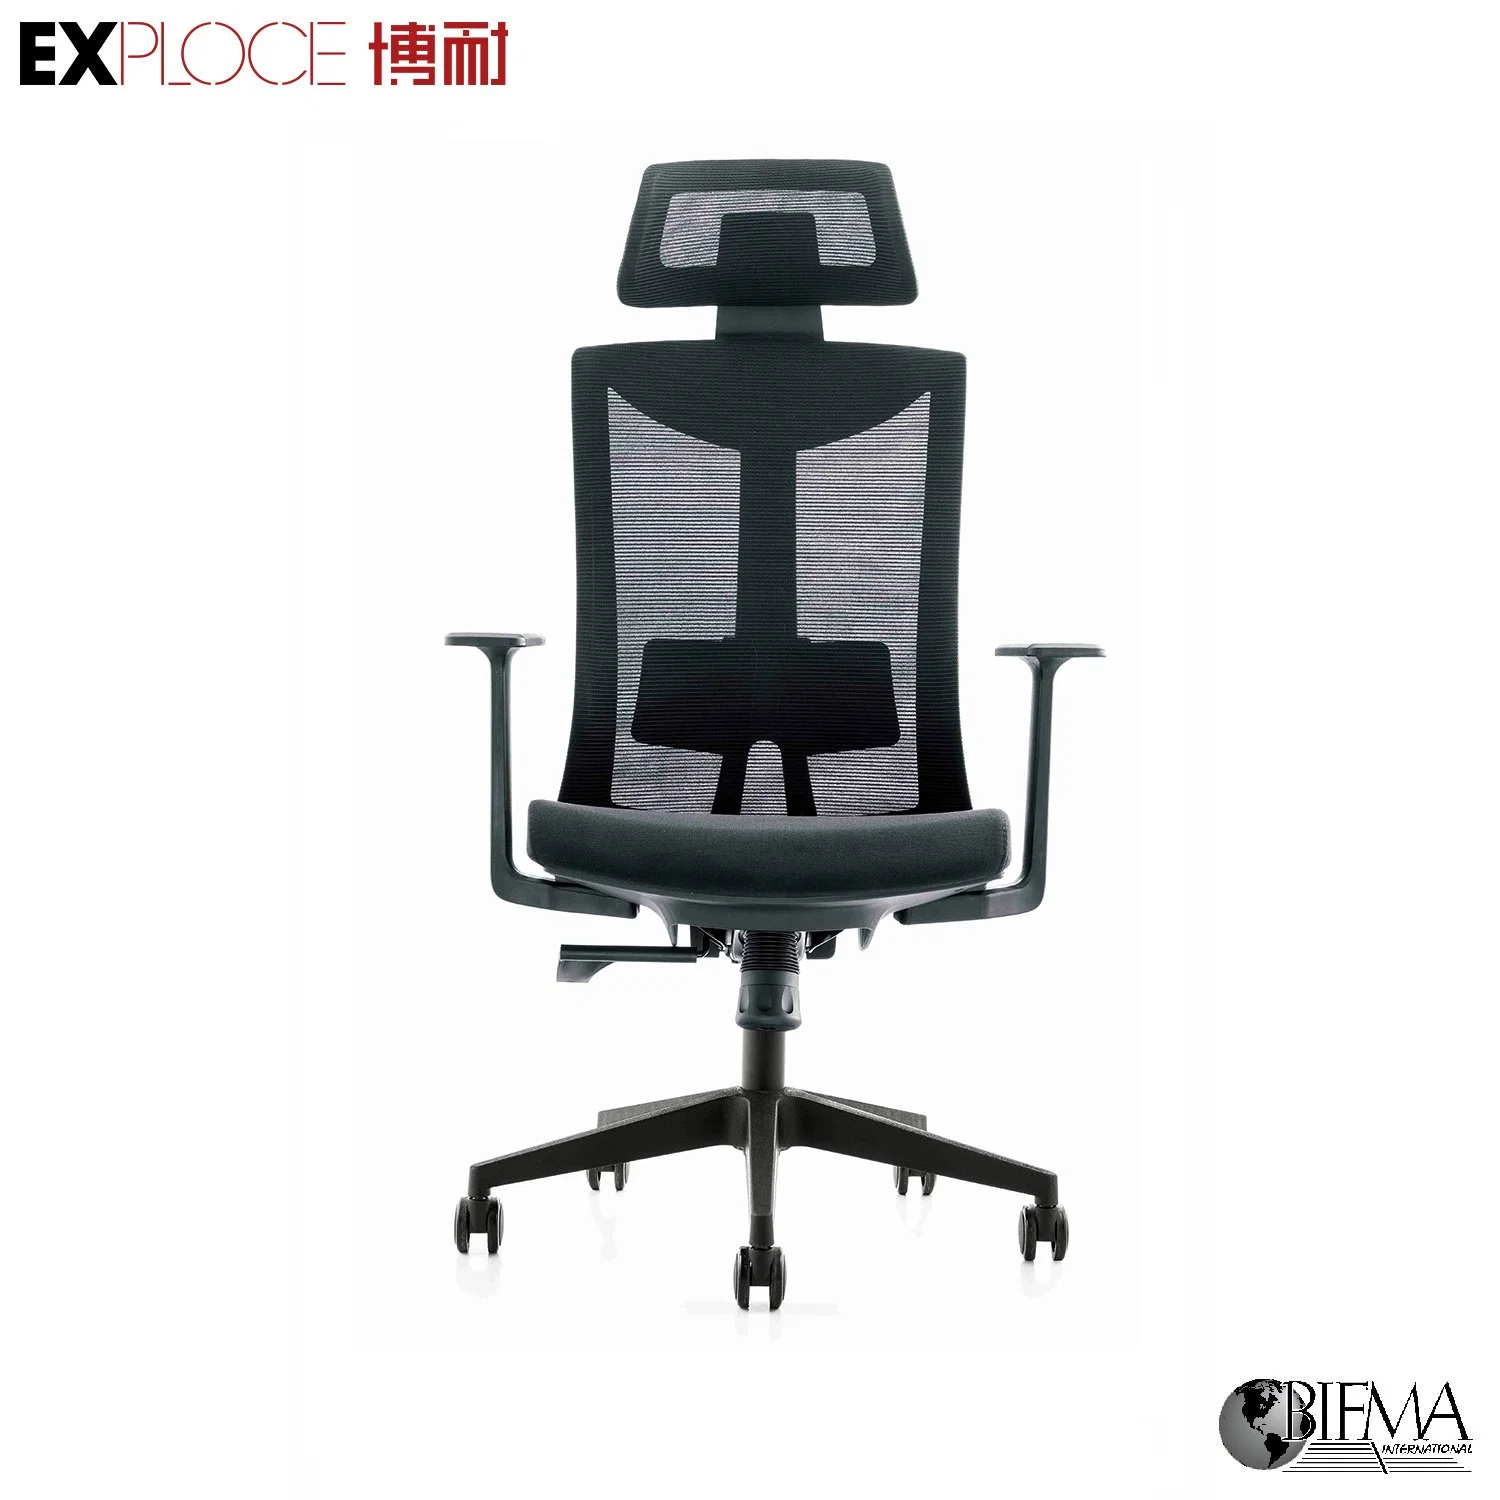 Comercio electrónico de Negocios en línea buen precio nuevas y modernas sillas de oficina para reuniones Mobiliario ergonómico para el hogar de visitantes B2C